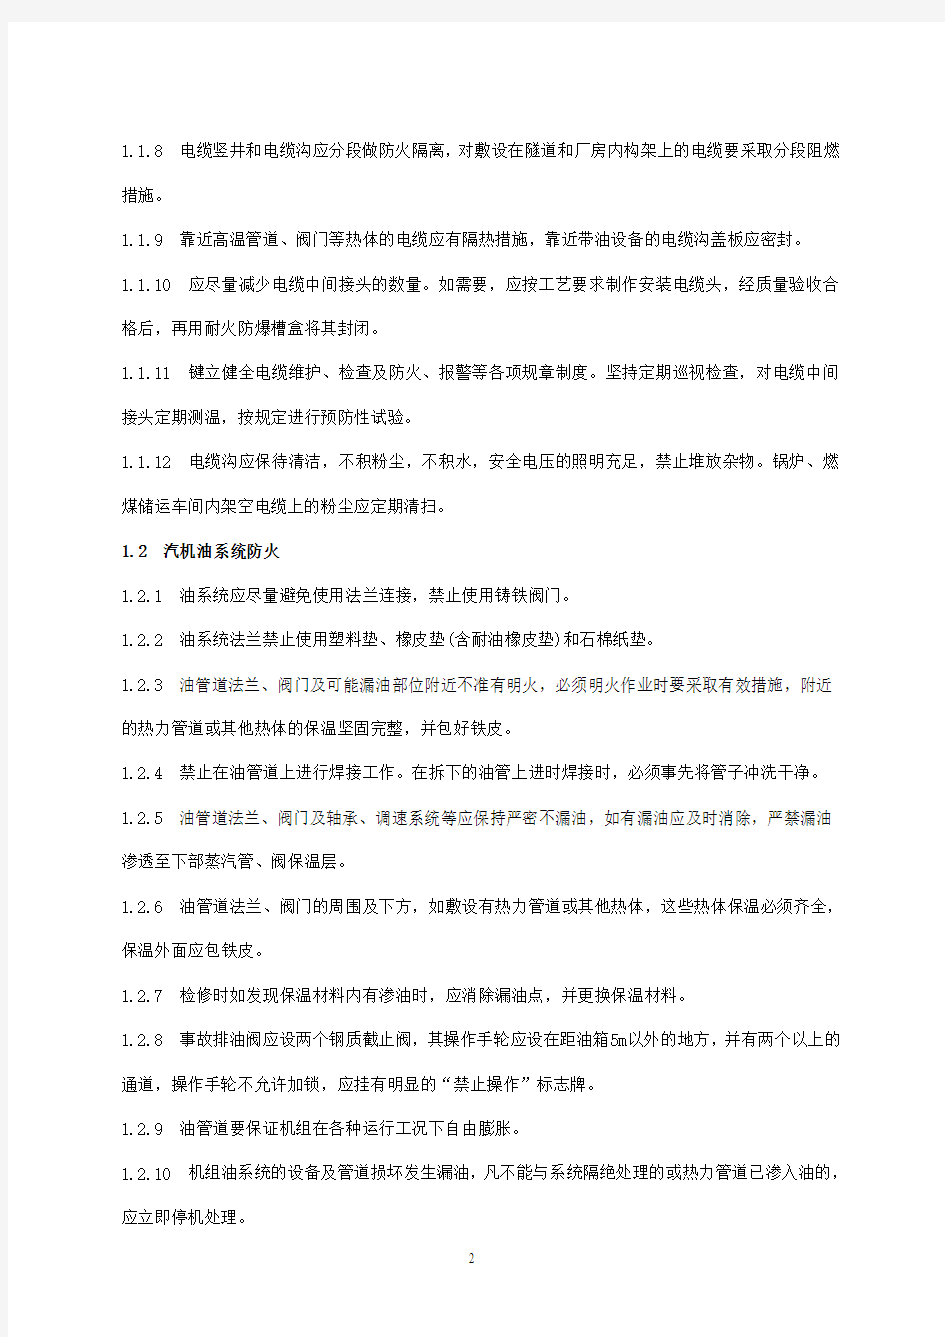 中国大唐集团公司25项反措细则